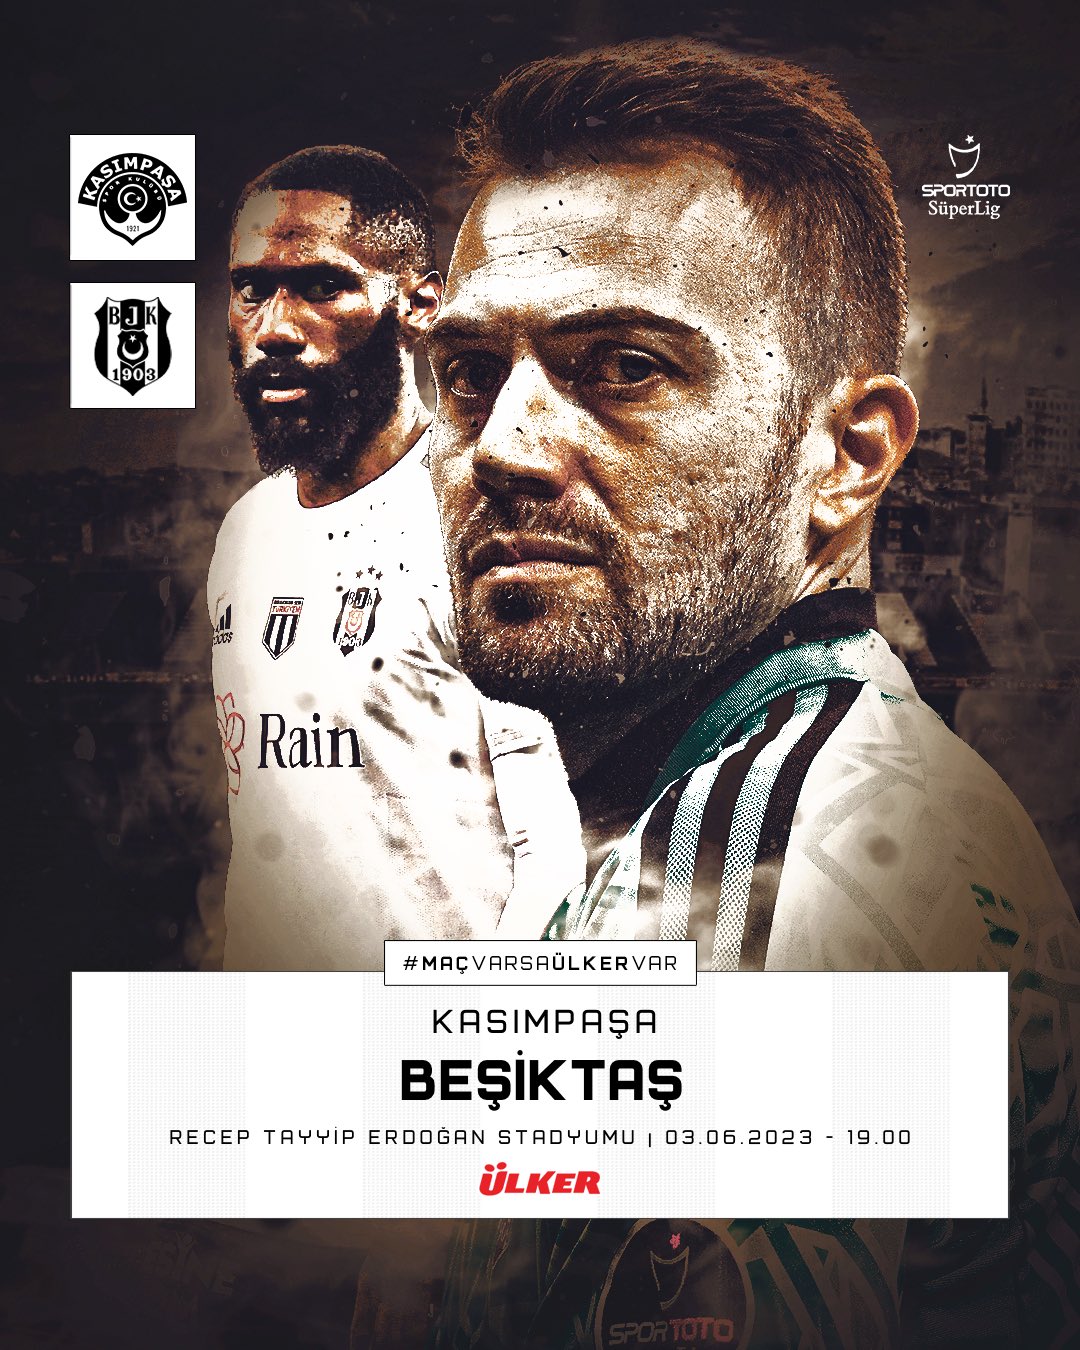 Beşiktaş JK on X: Bugün #BeşiktaşınMaçıVar 💪 @Ulker